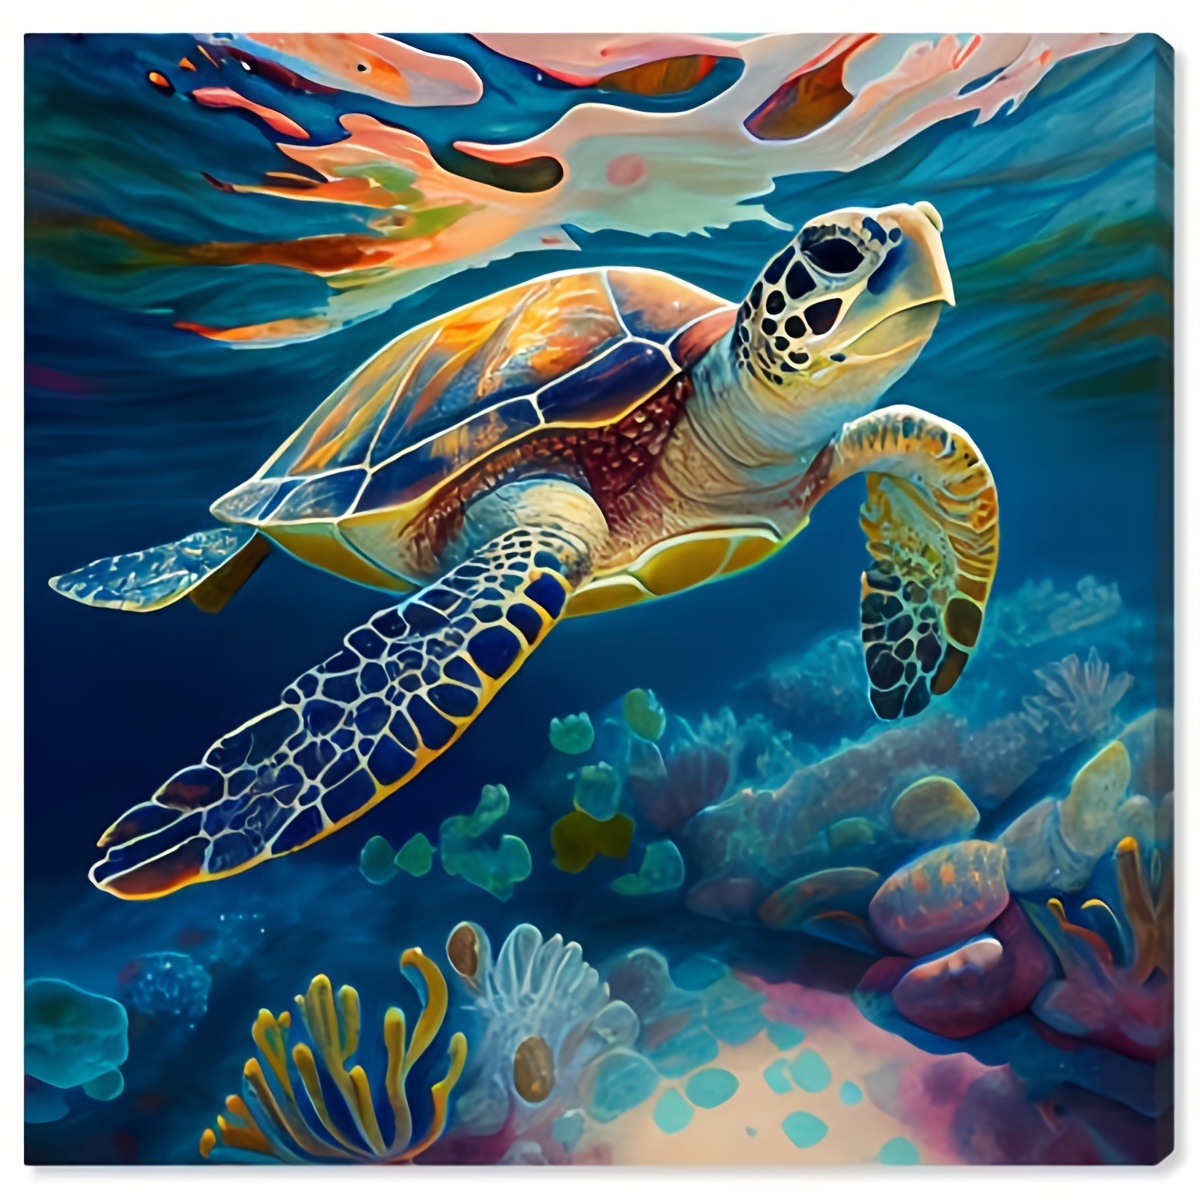 5D Diamond Painting Sea Turtles Kit